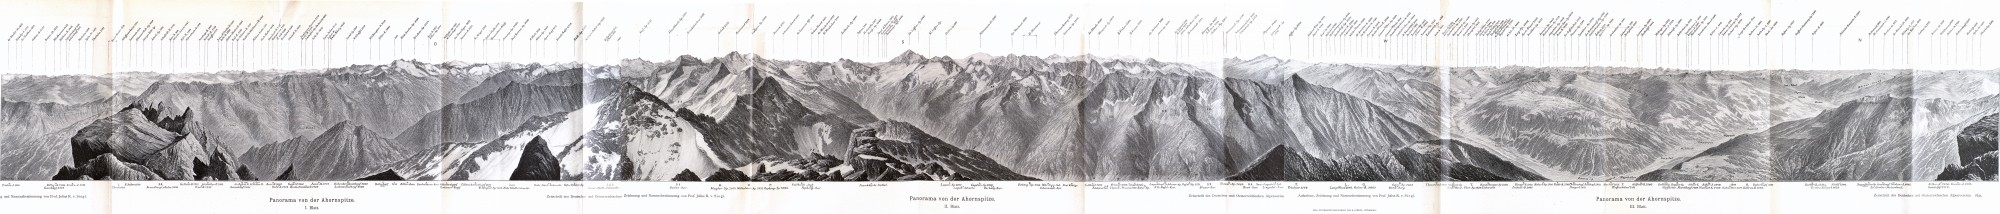 Panorama von der Ahornspitze